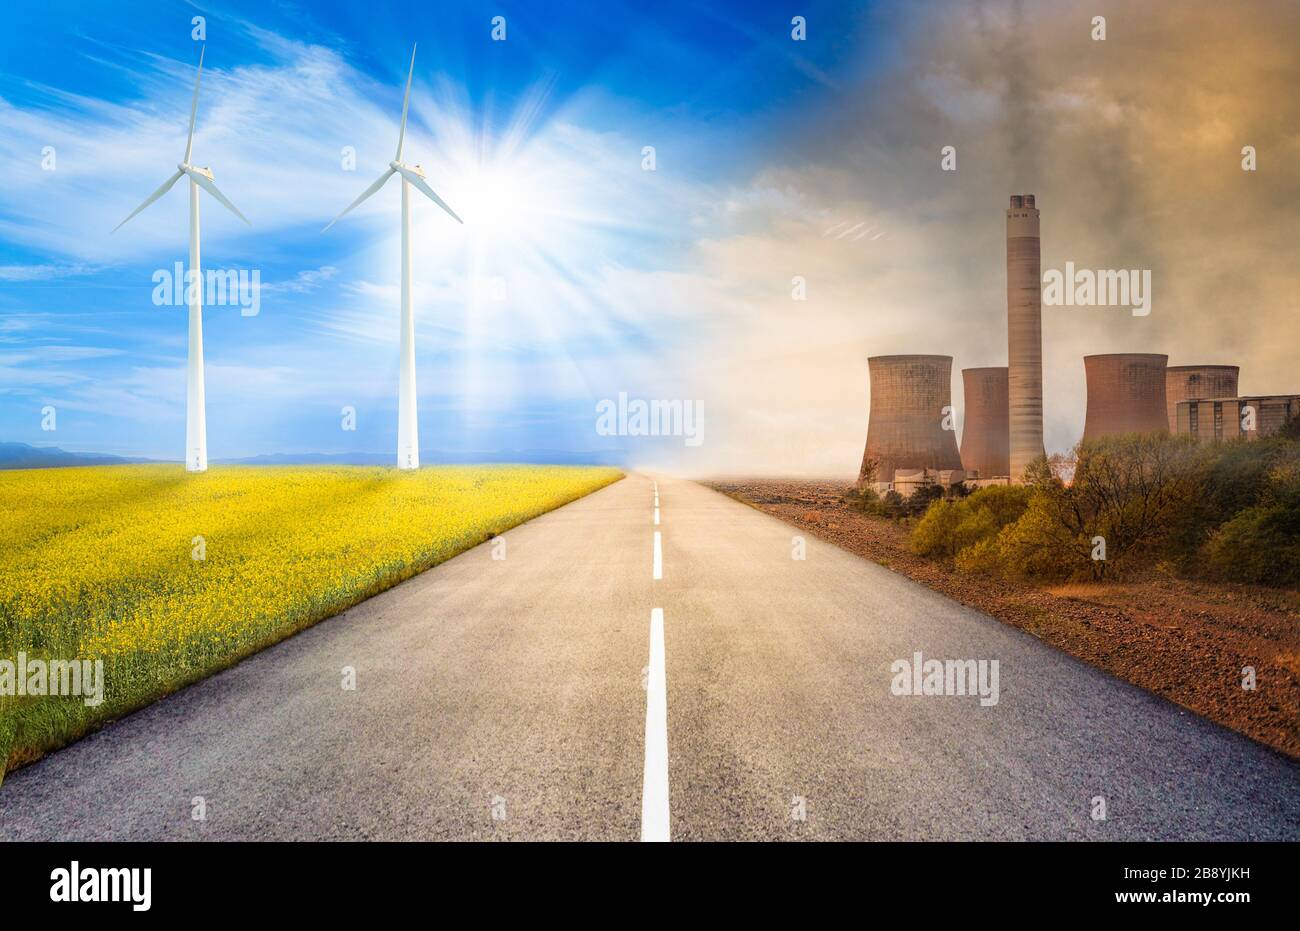 immagine concettuale sull'inquinamento provocato dalle centrali elettriche e dalle energie rinnovabili dall'altra parte Foto Stock